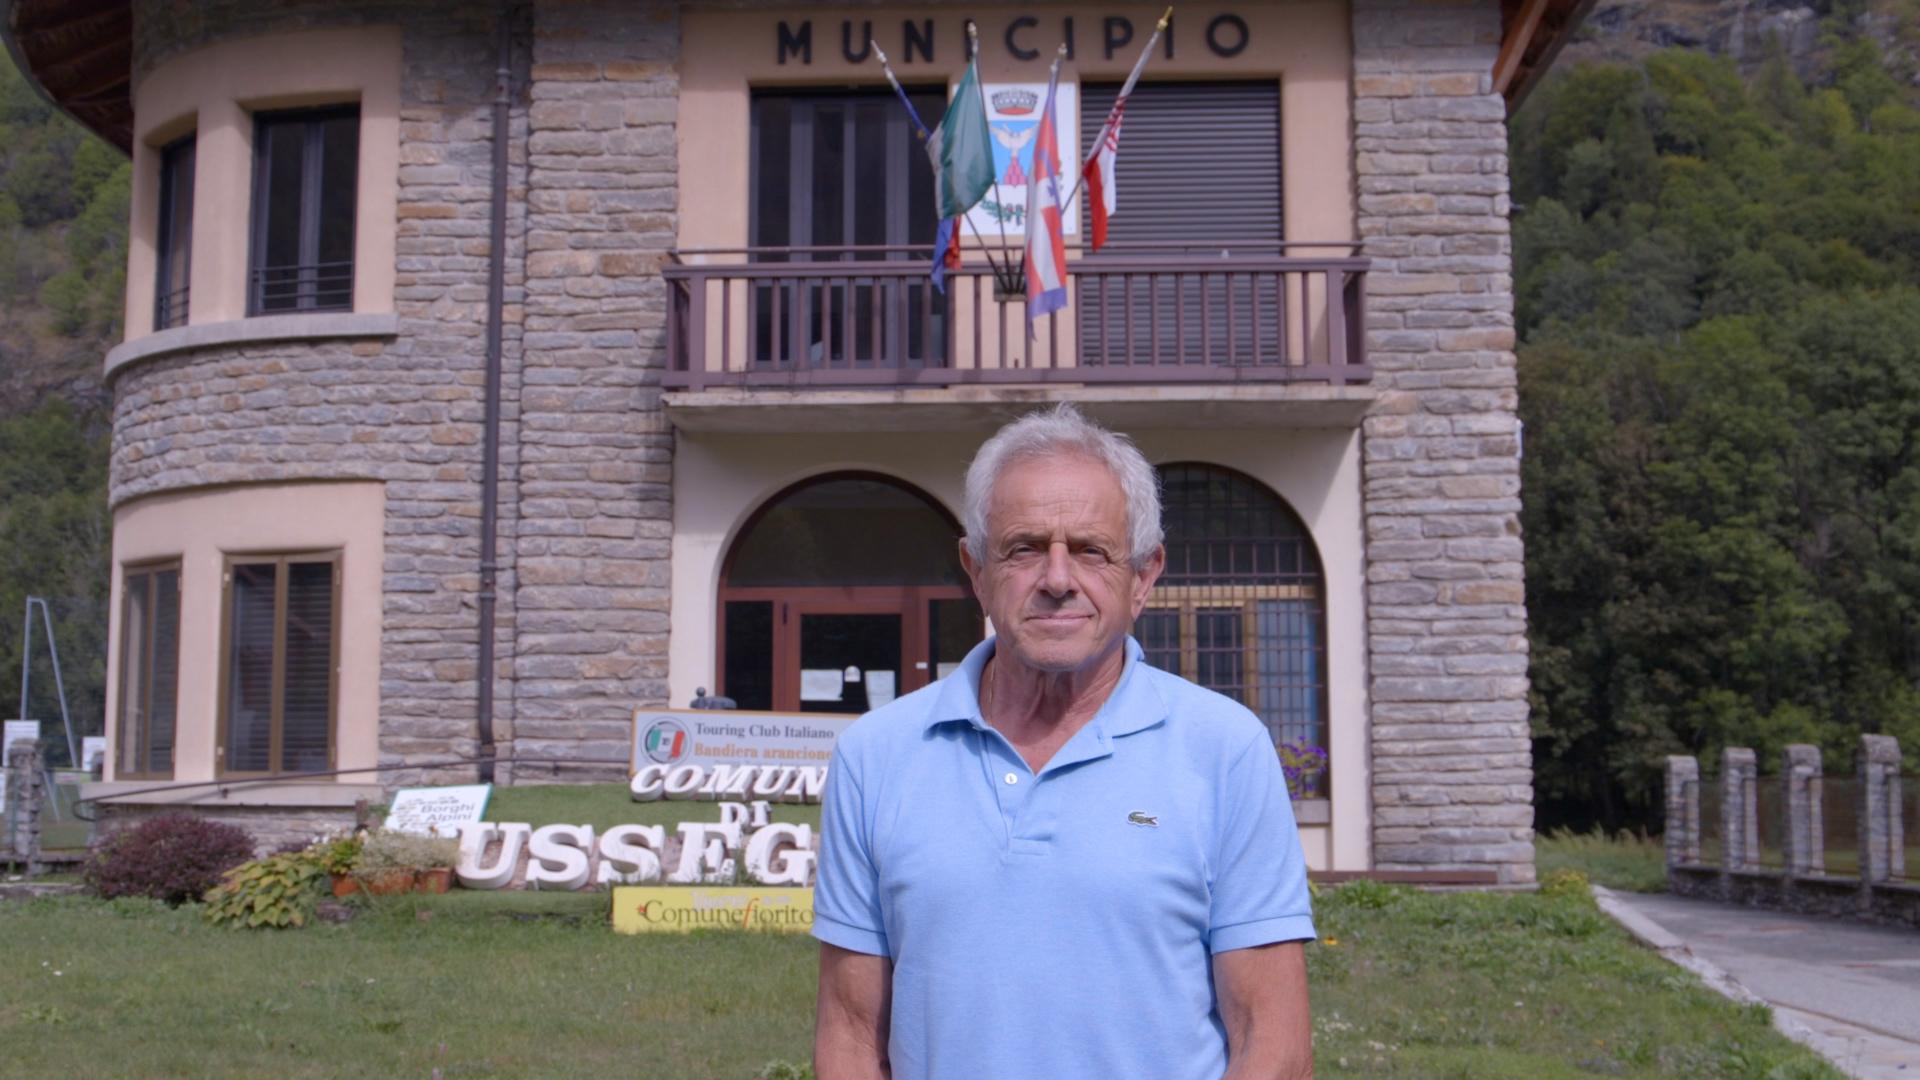 Giuseppe Bona, Assessore all'ambiente di Usseglio